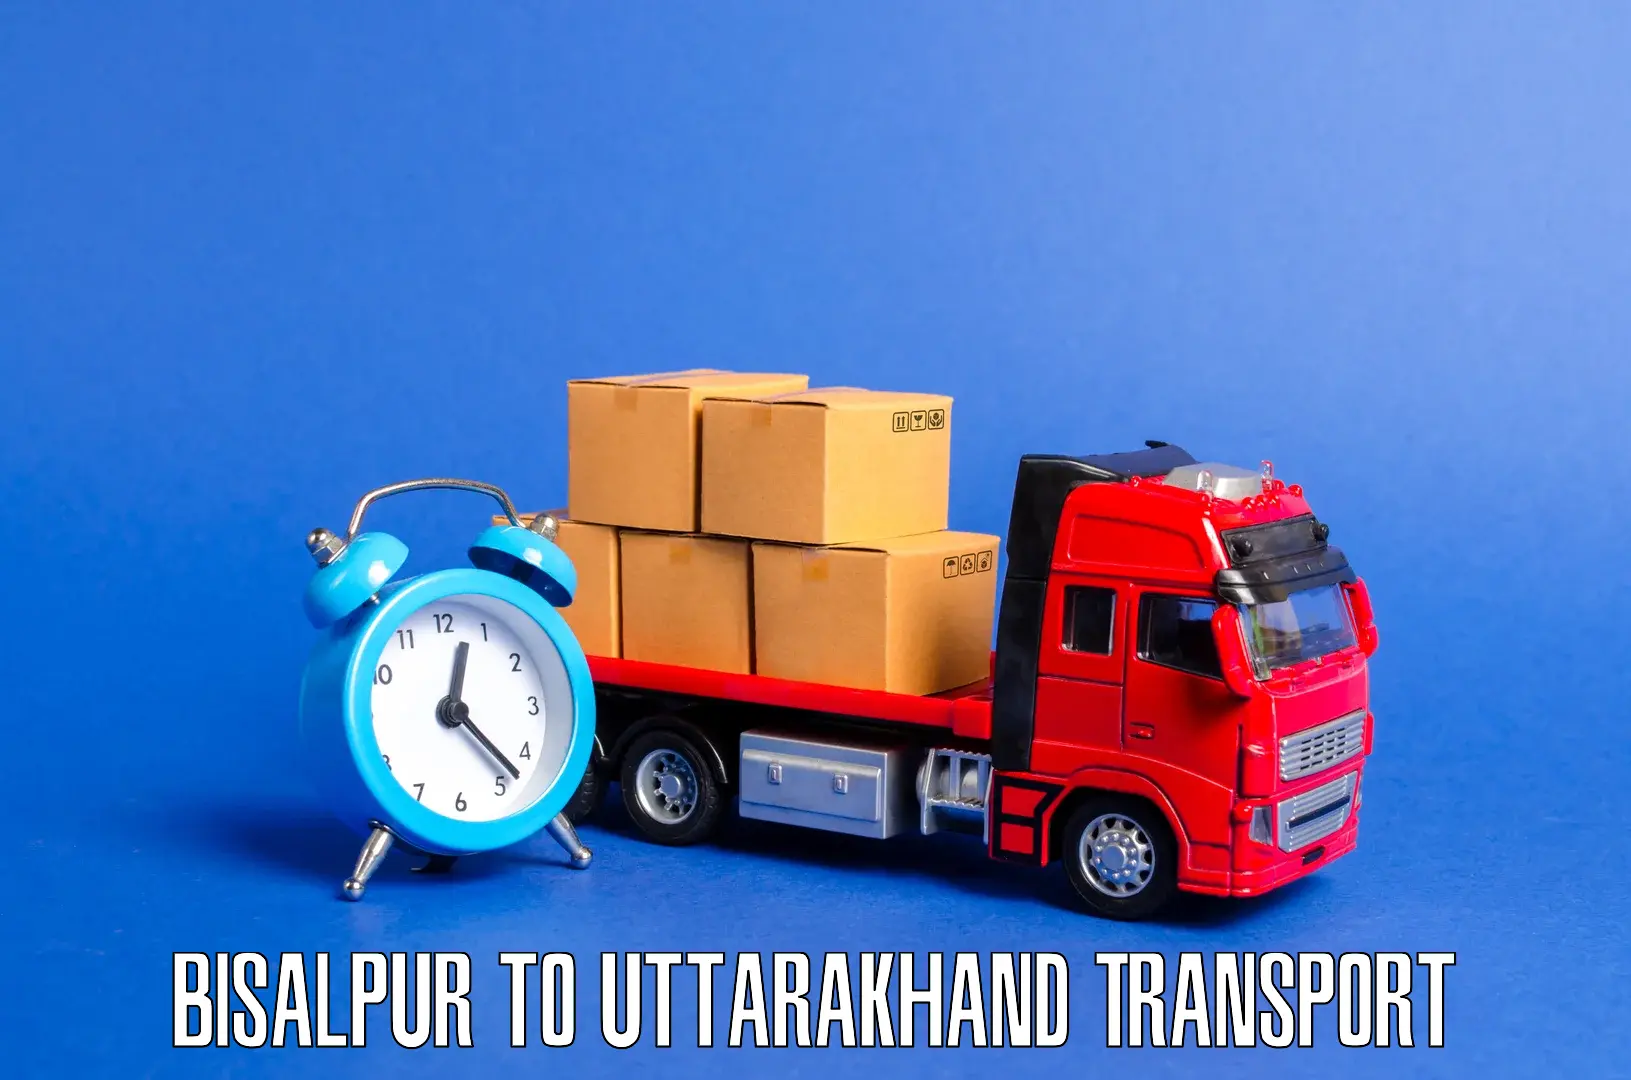 Air freight transport services Bisalpur to Dehradun